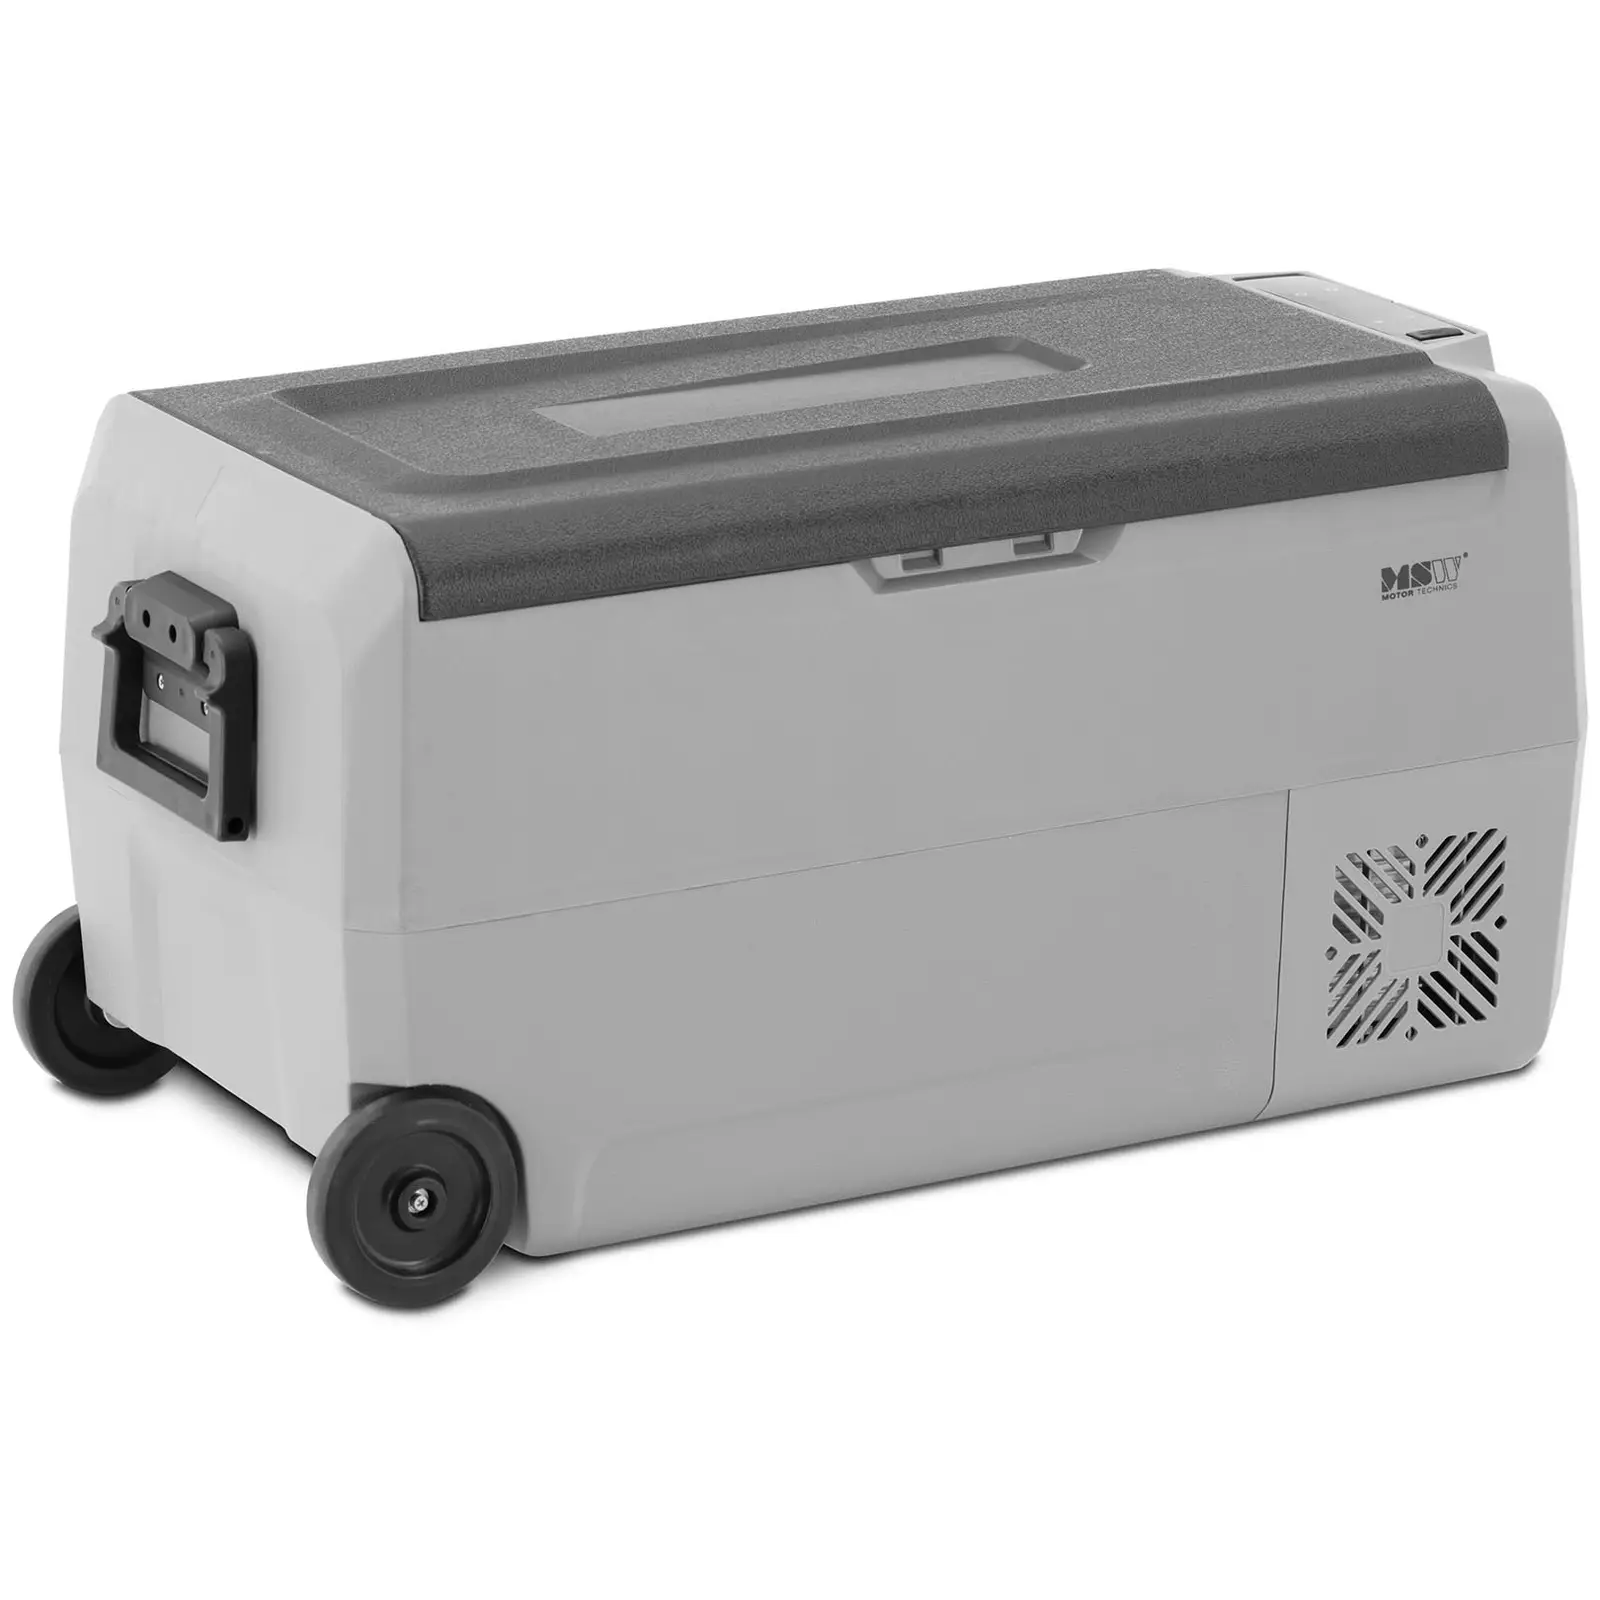 Auto koelkast / vriezer - 12/24 V (DC) / 100 - 240 V (AC) - 36 L - 2 aparte temperatuurzones